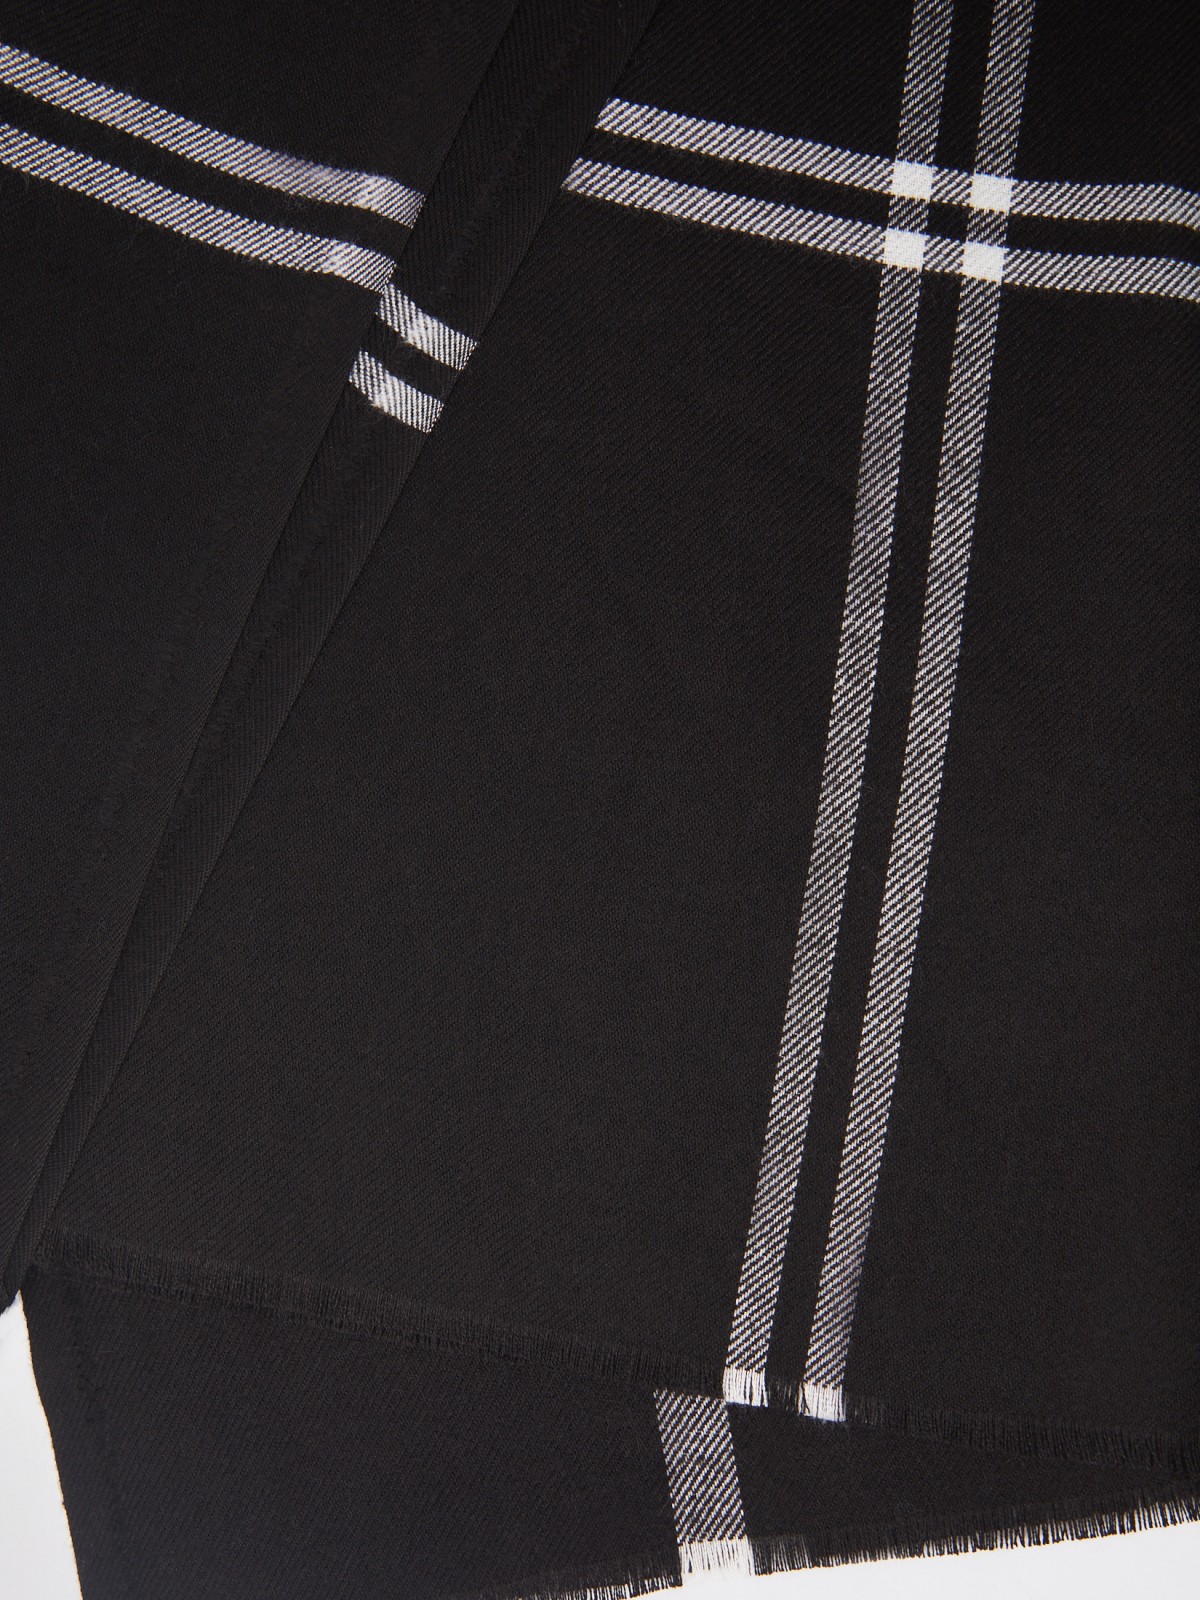 Тканевый клетчатый шарф с короткой бахромой zolla 024119159045, цвет черный, размер No_size - фото 3